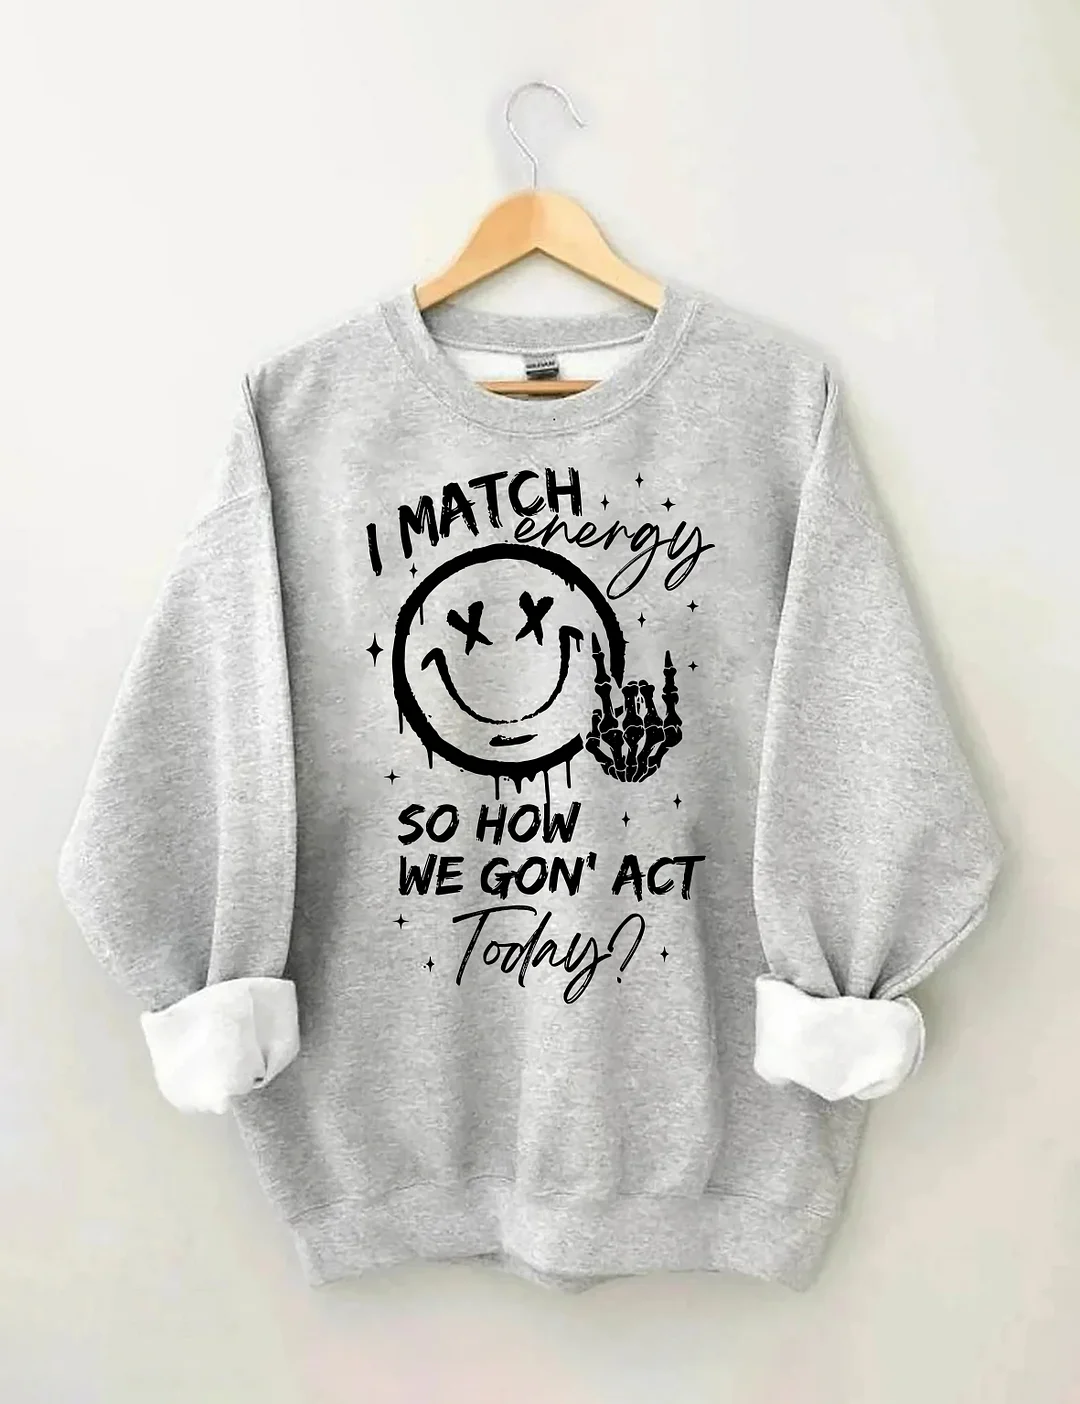 I Match Energy Sweatshirt